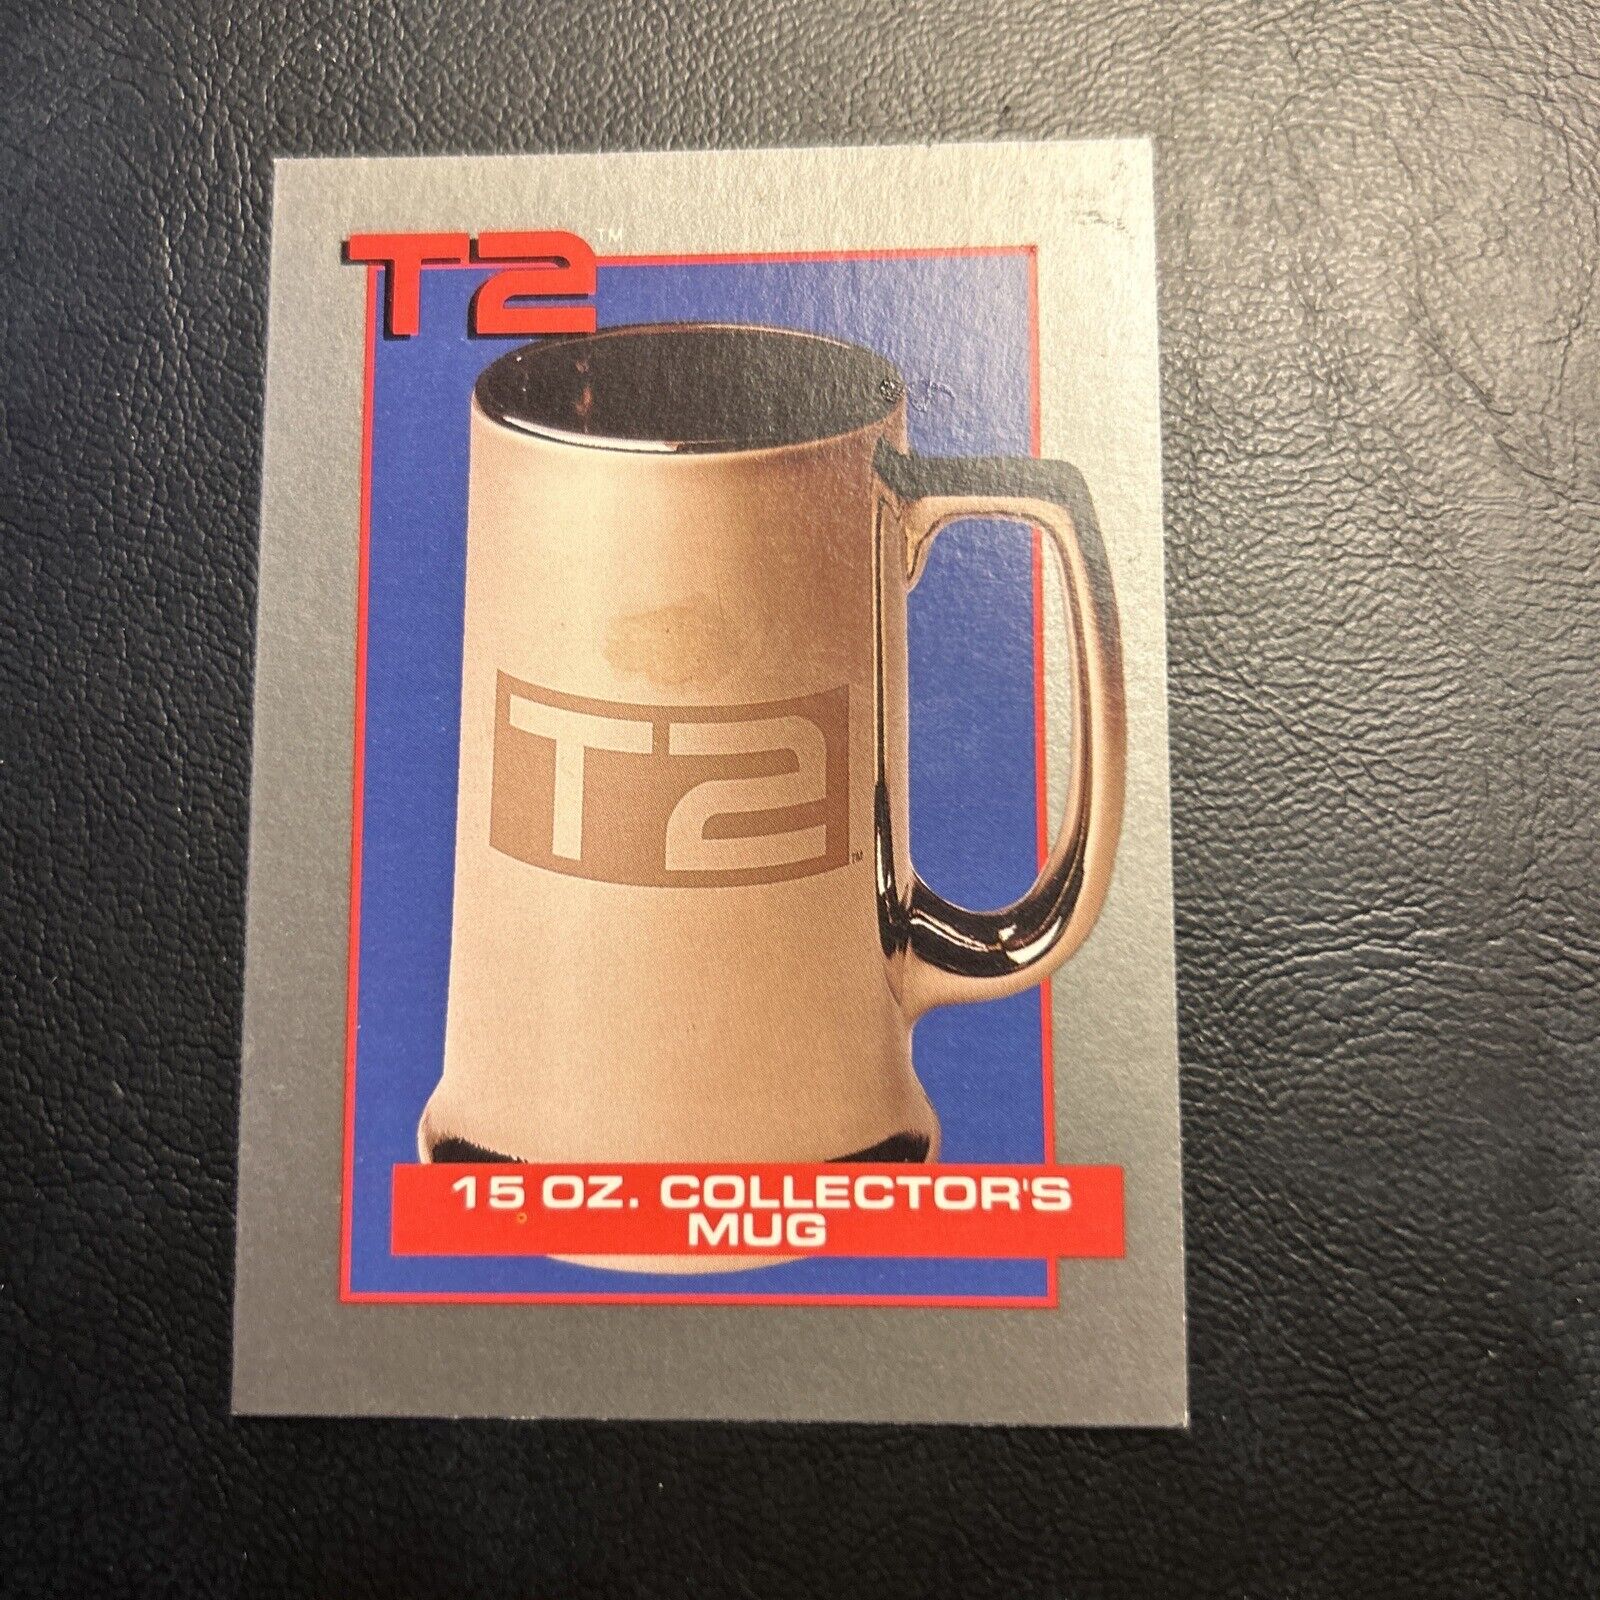 Jb5d T2 terminator 2 Judgment Day, 1991 15 Oz Mug Merchandise Collectors